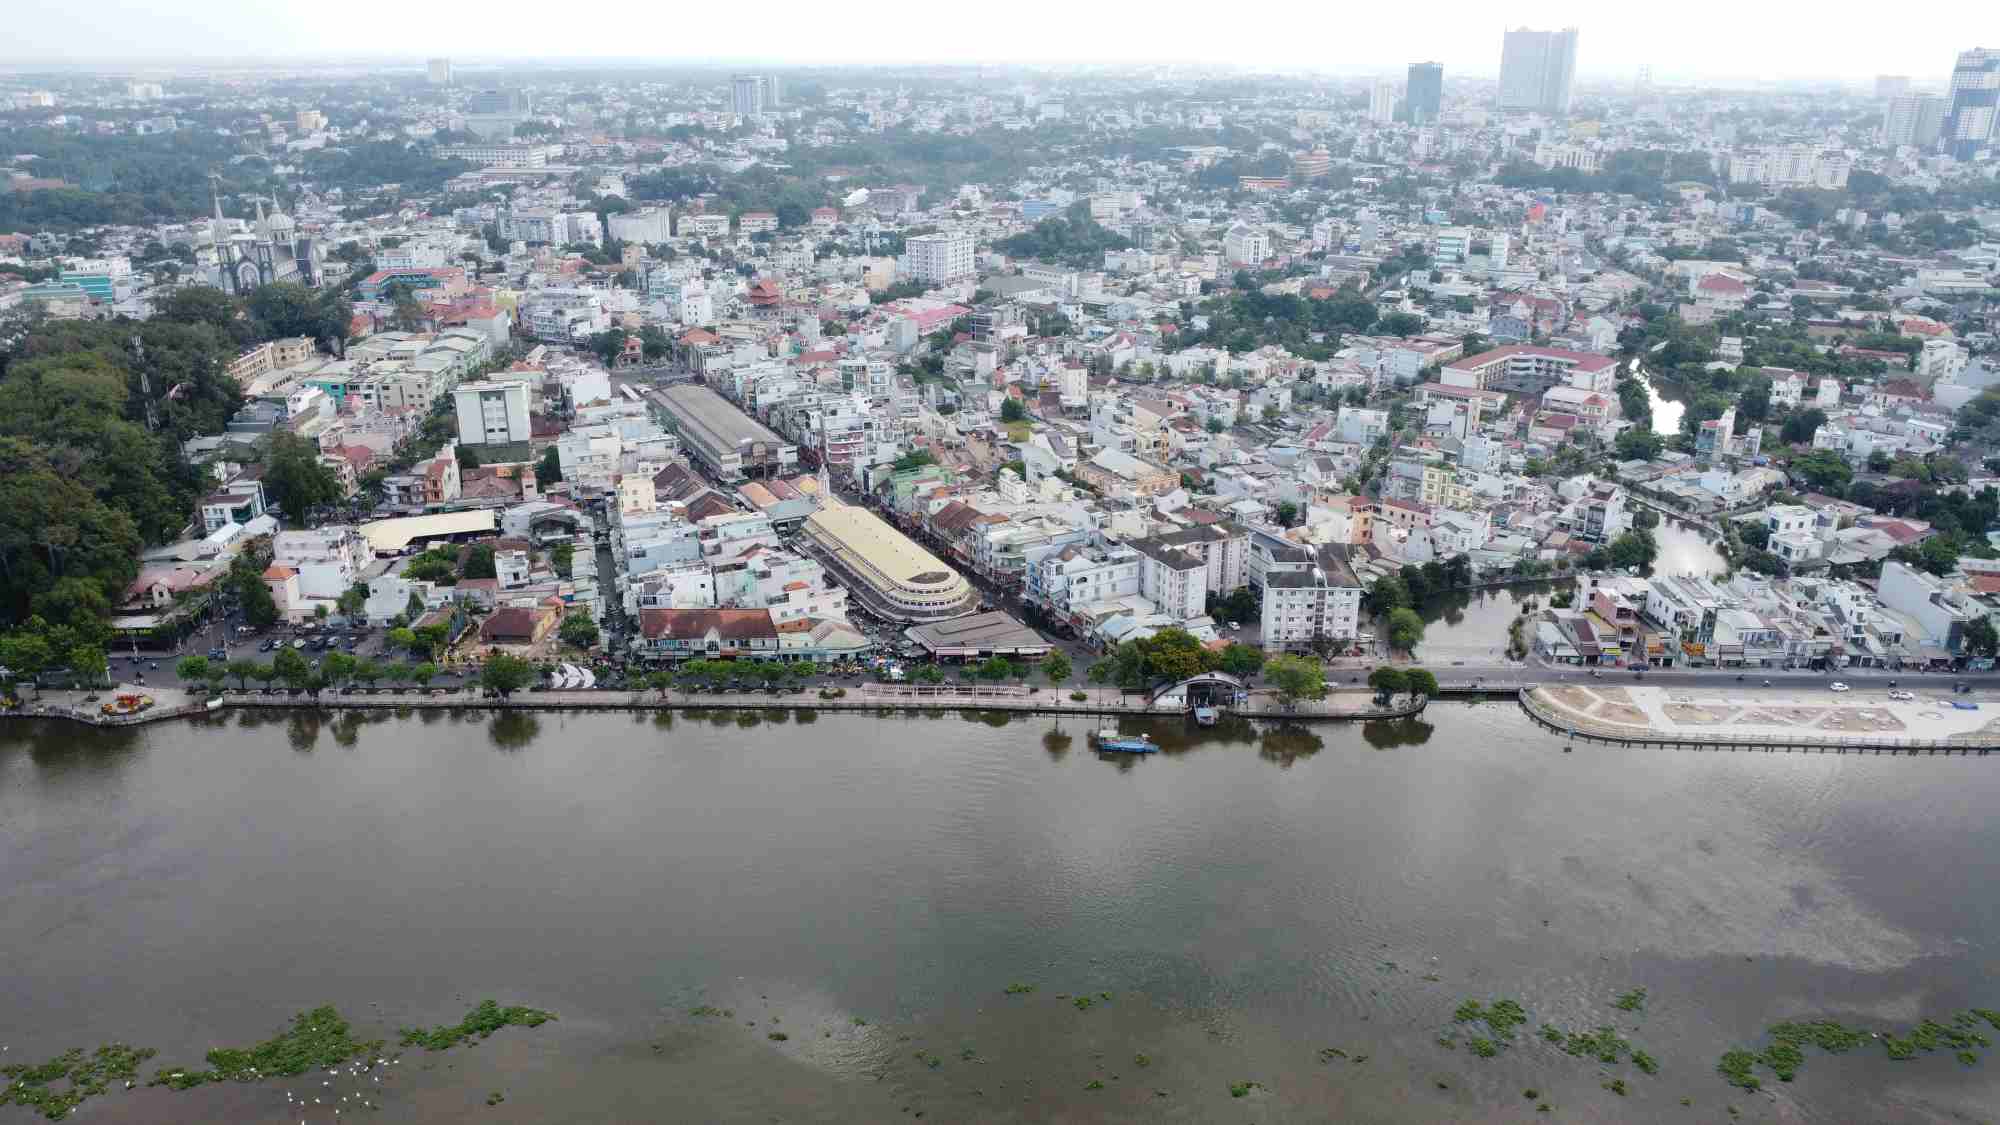 Phía dưới là sông Sài Gòn, bên trong là đô thị Thủ Dầu Một, Bình Dương - Vùng đất có lịch sử phát triển hơn 300 năm.